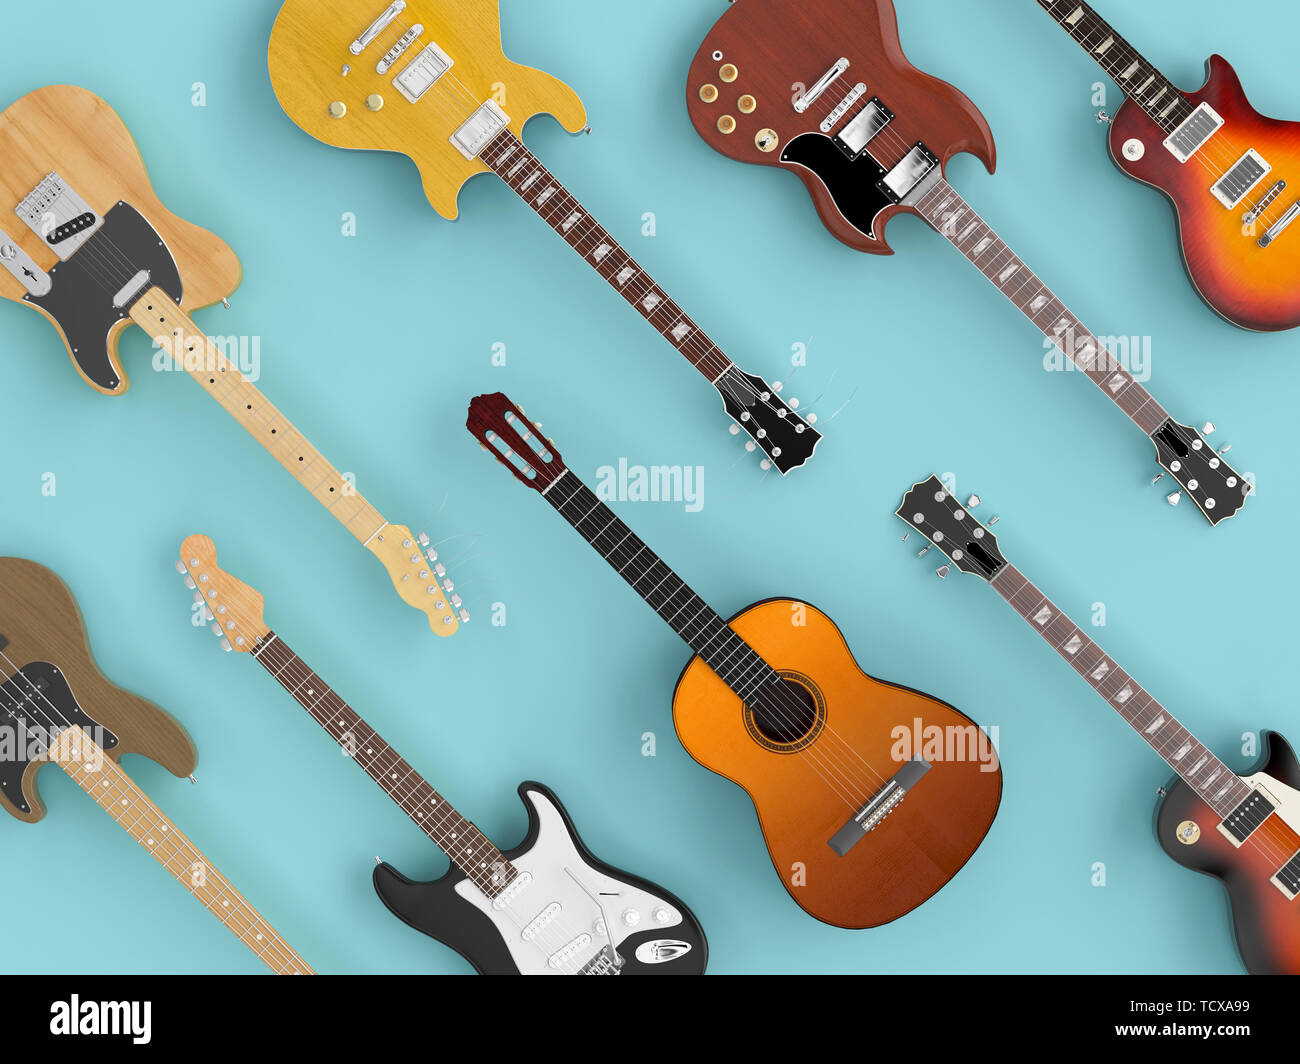 Groupe de guitares differenty vu de dessus en télévision jeter style. Image 3D rendu. Banque D'Images